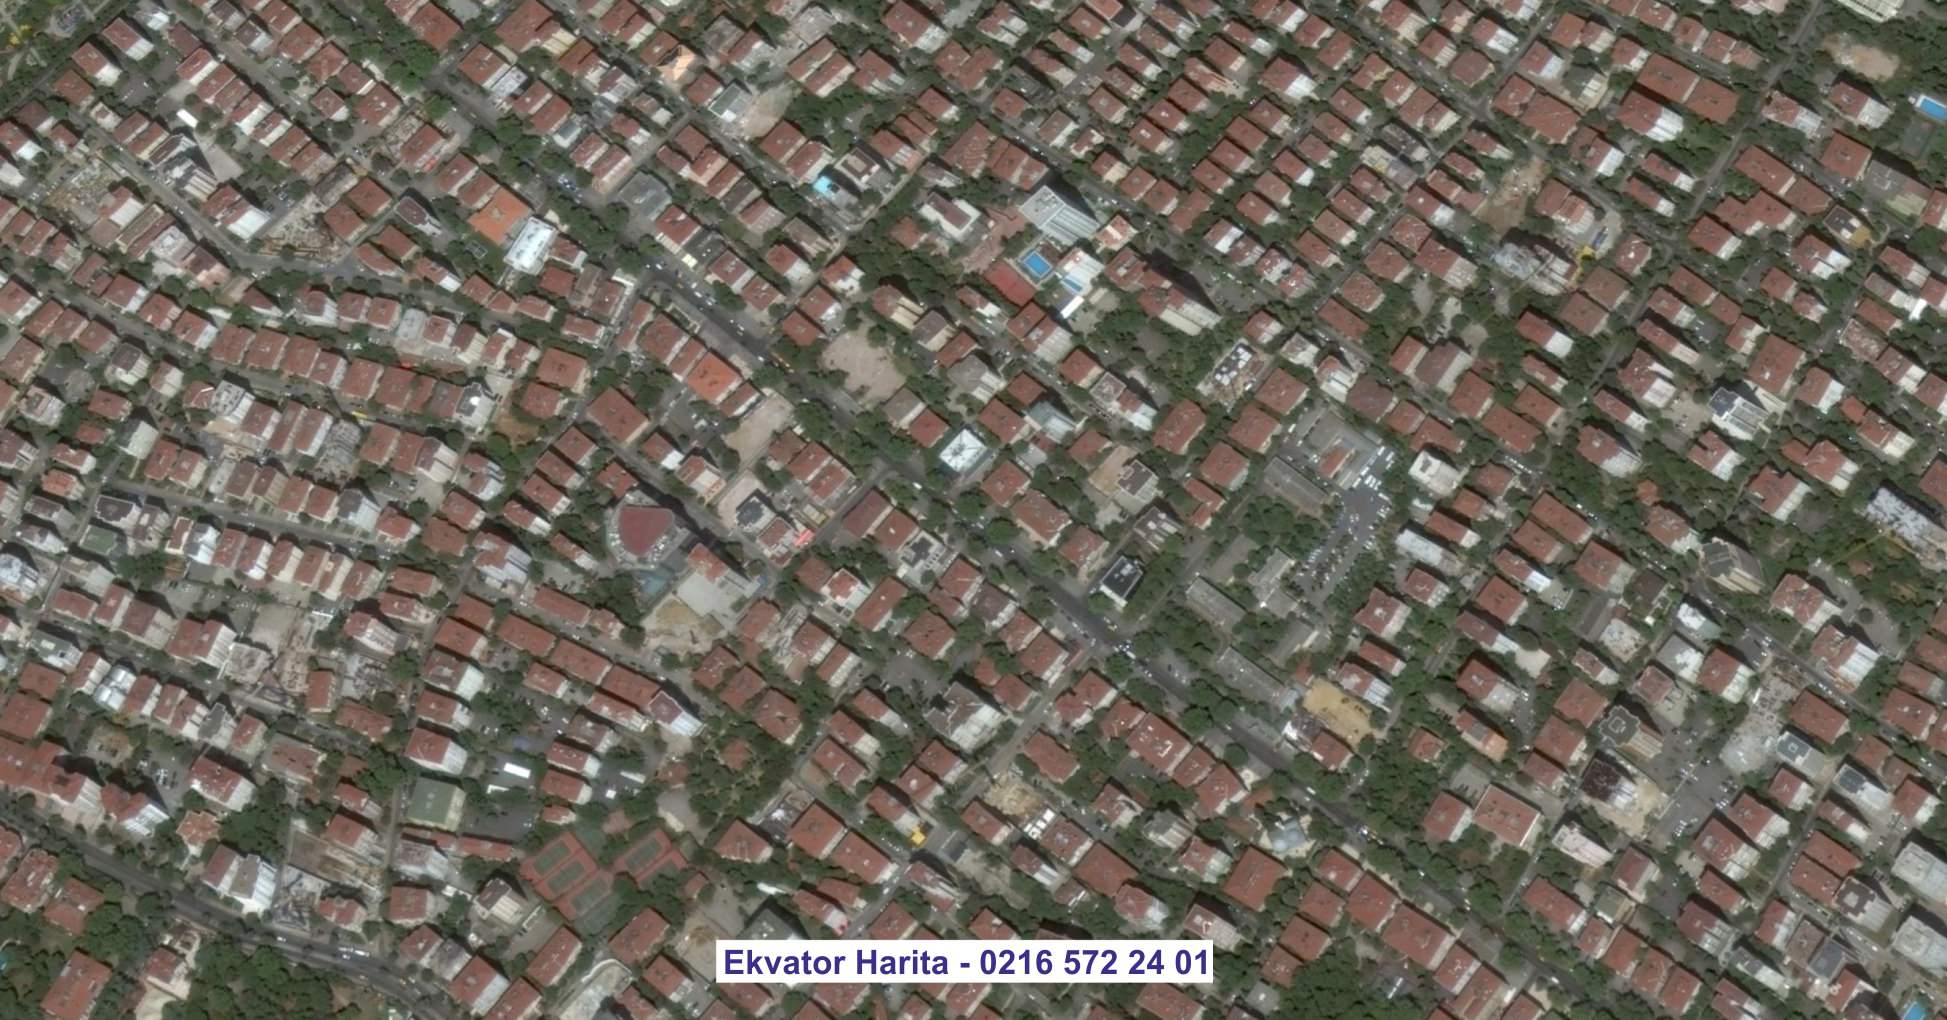 Ankara Uydu Görüntüsü Örnek Fotoğrafı